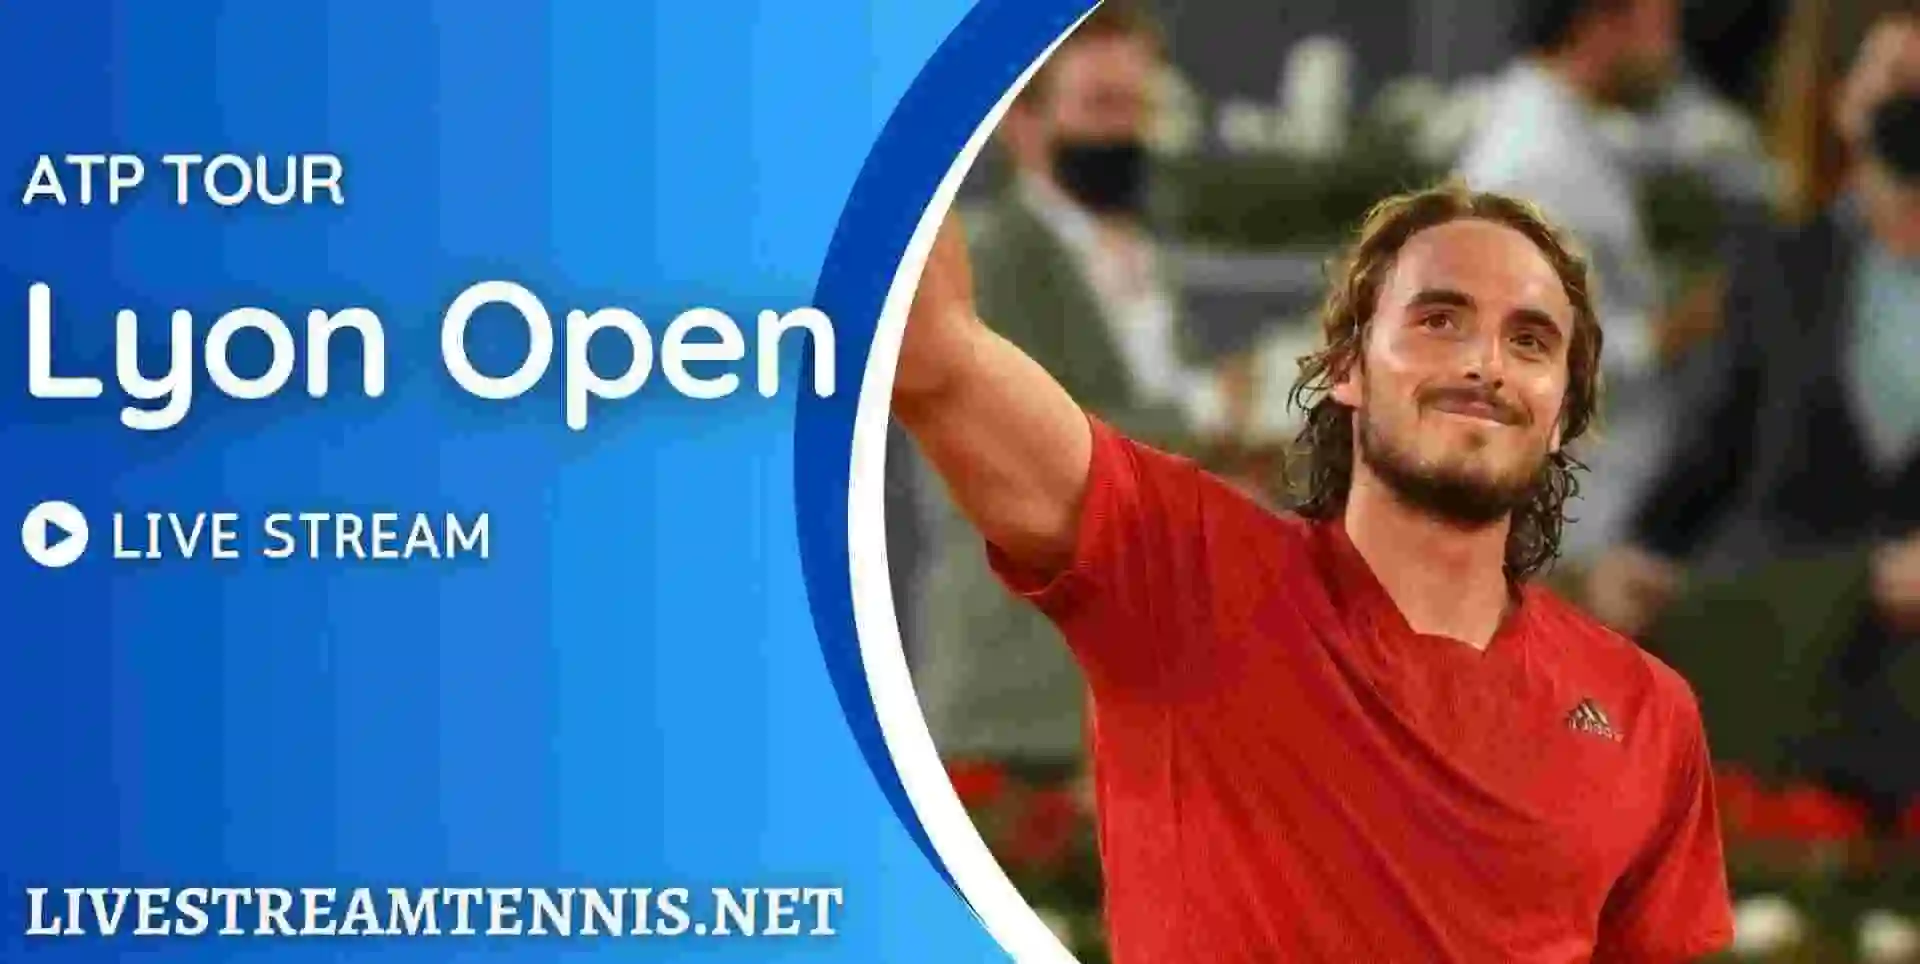 Lyon Open Live Stream ATP Tour Tennis